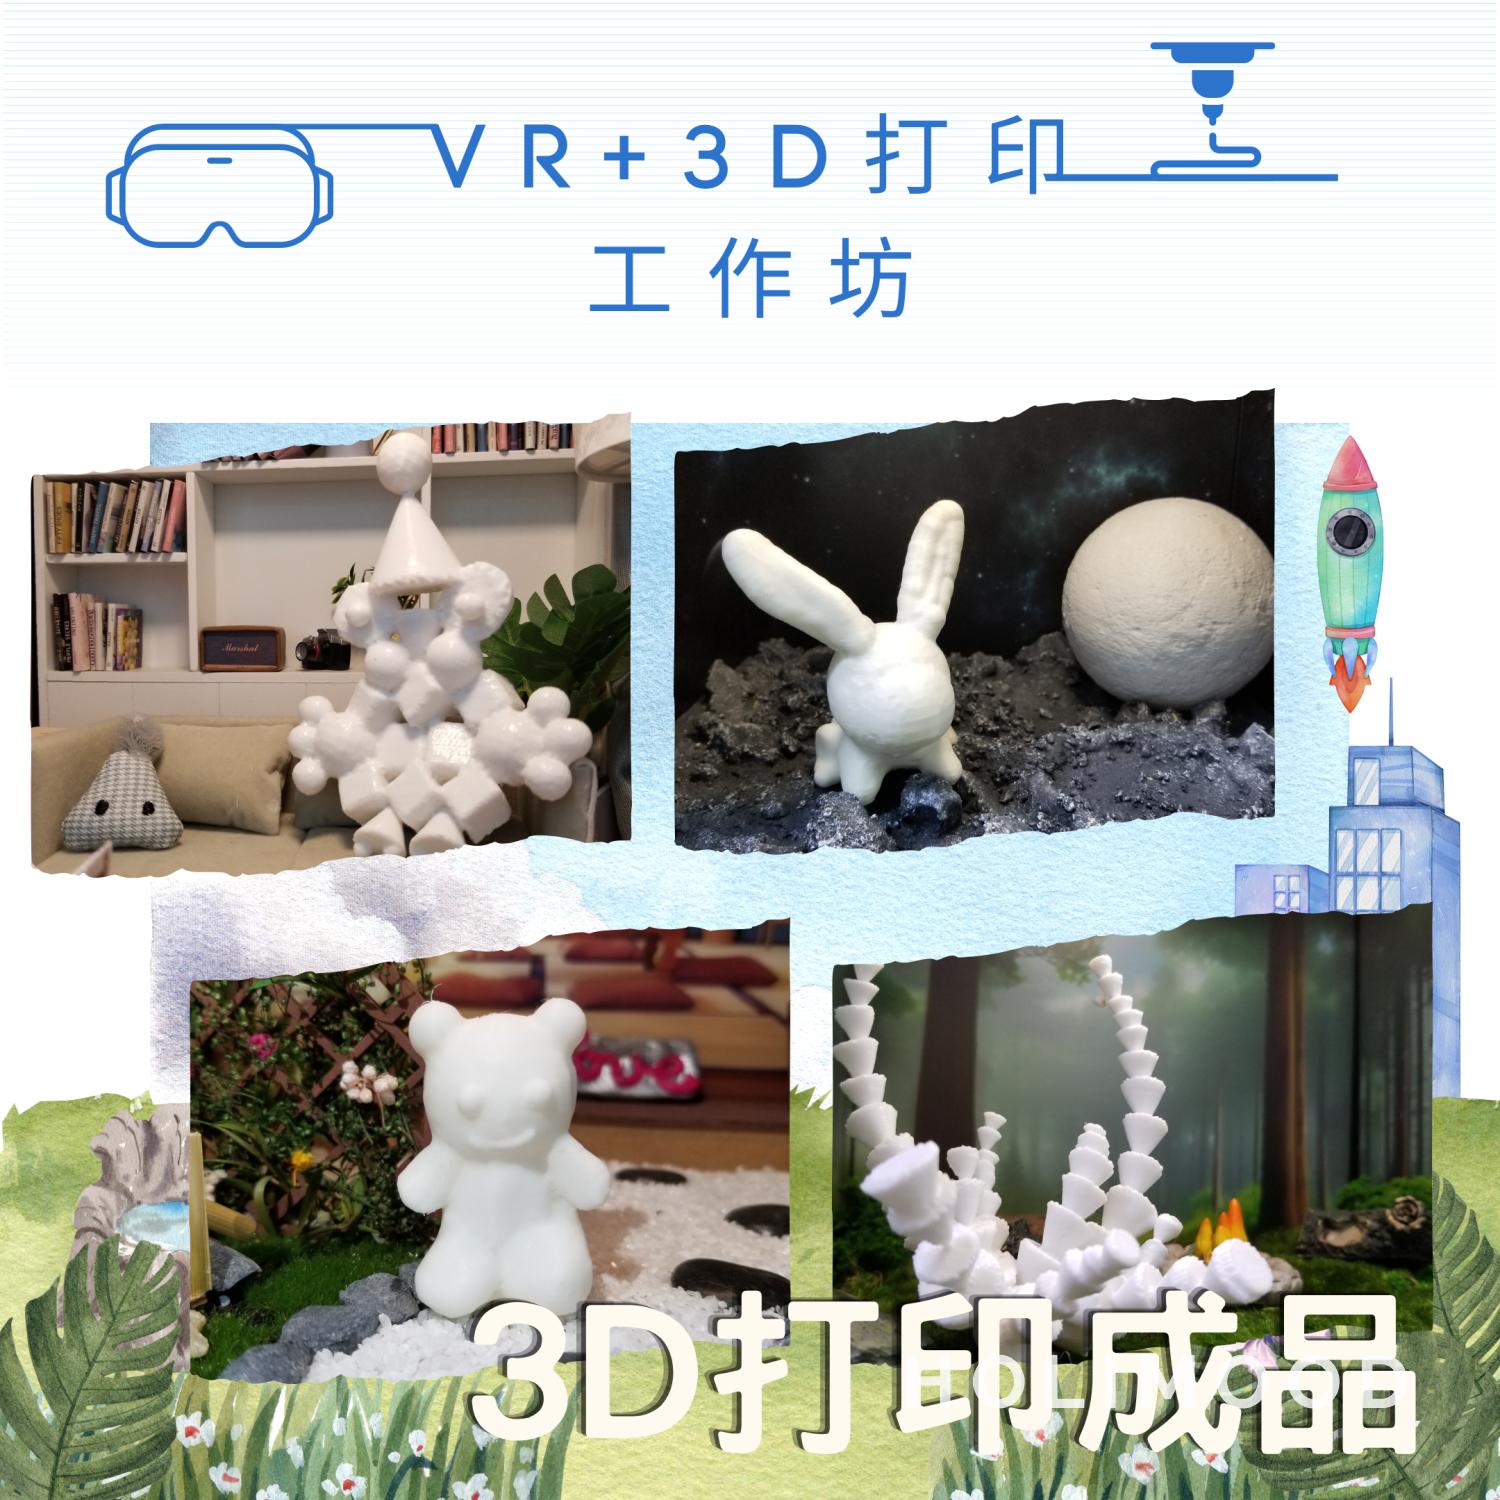 V-Owl Station VR Party VR+3D打印工作坊 4